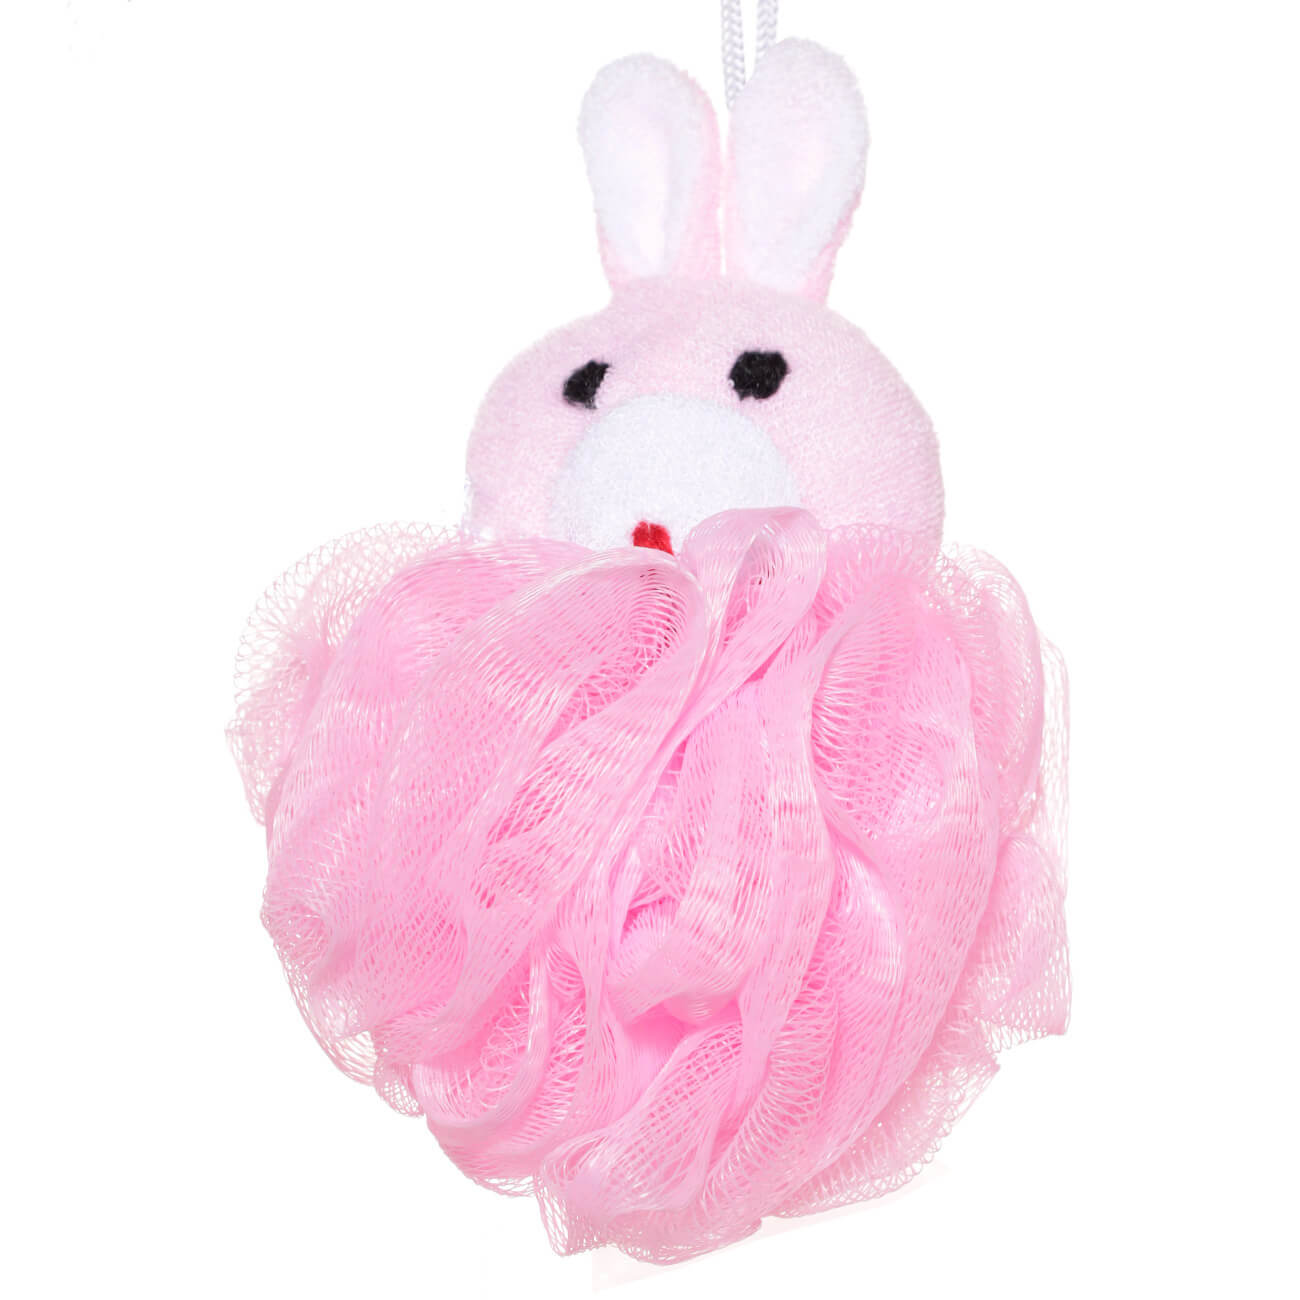 Мочалка для мытья тела, 12 см, детская, полиэтилен/полиэстер, розовая, Заяц, Rabbit мочалка для мытья тела 13 см полиэтилен пудровая бант glamor